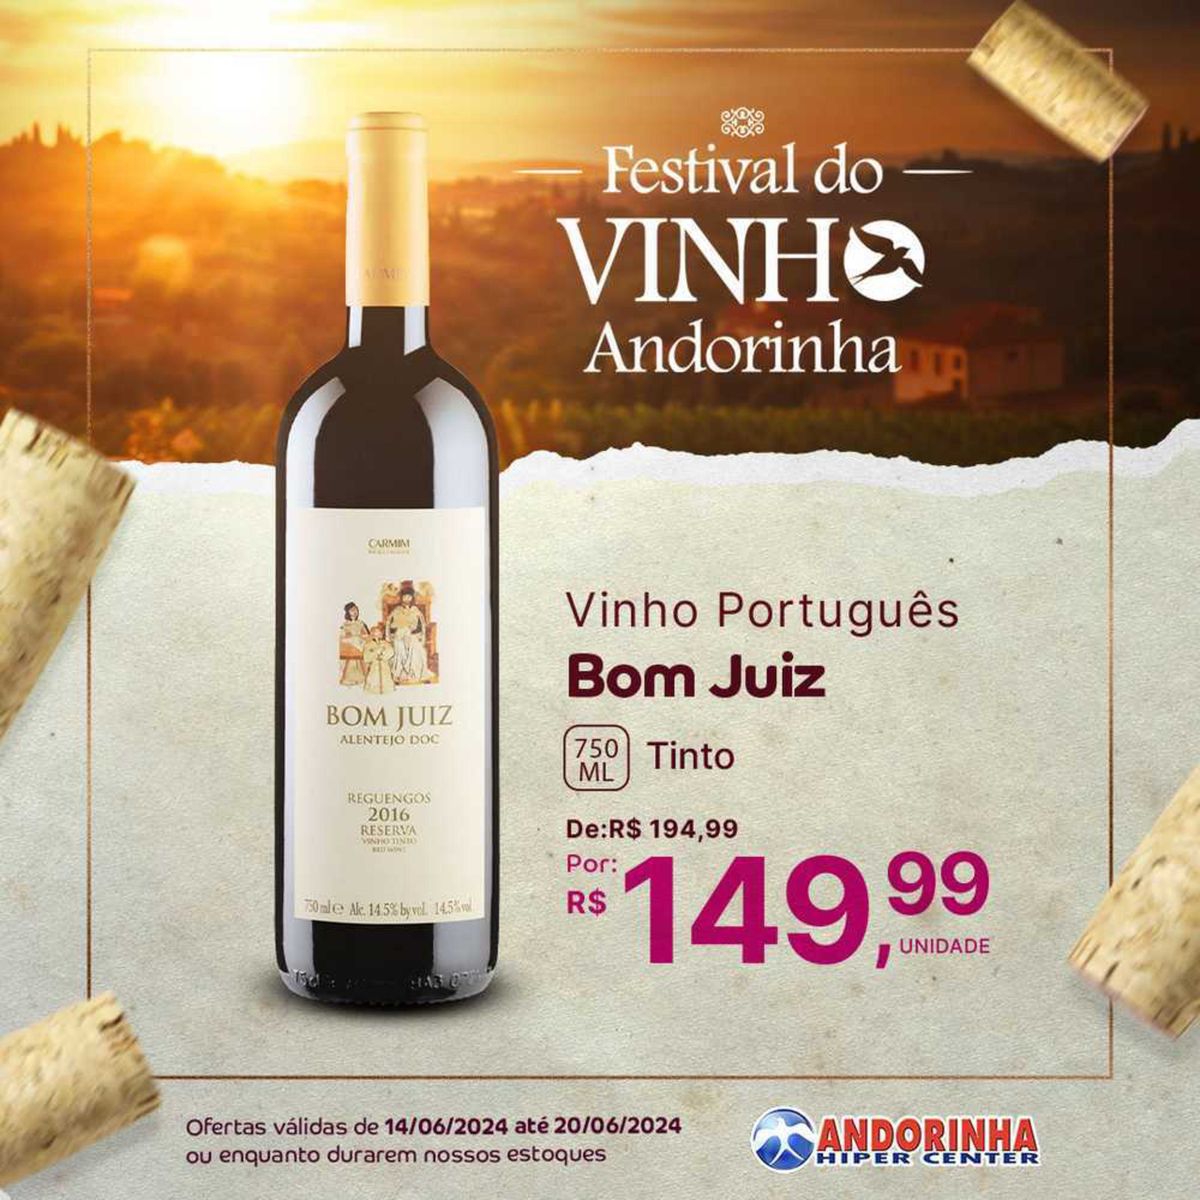 Vinho Português Tinto Bom Juiz